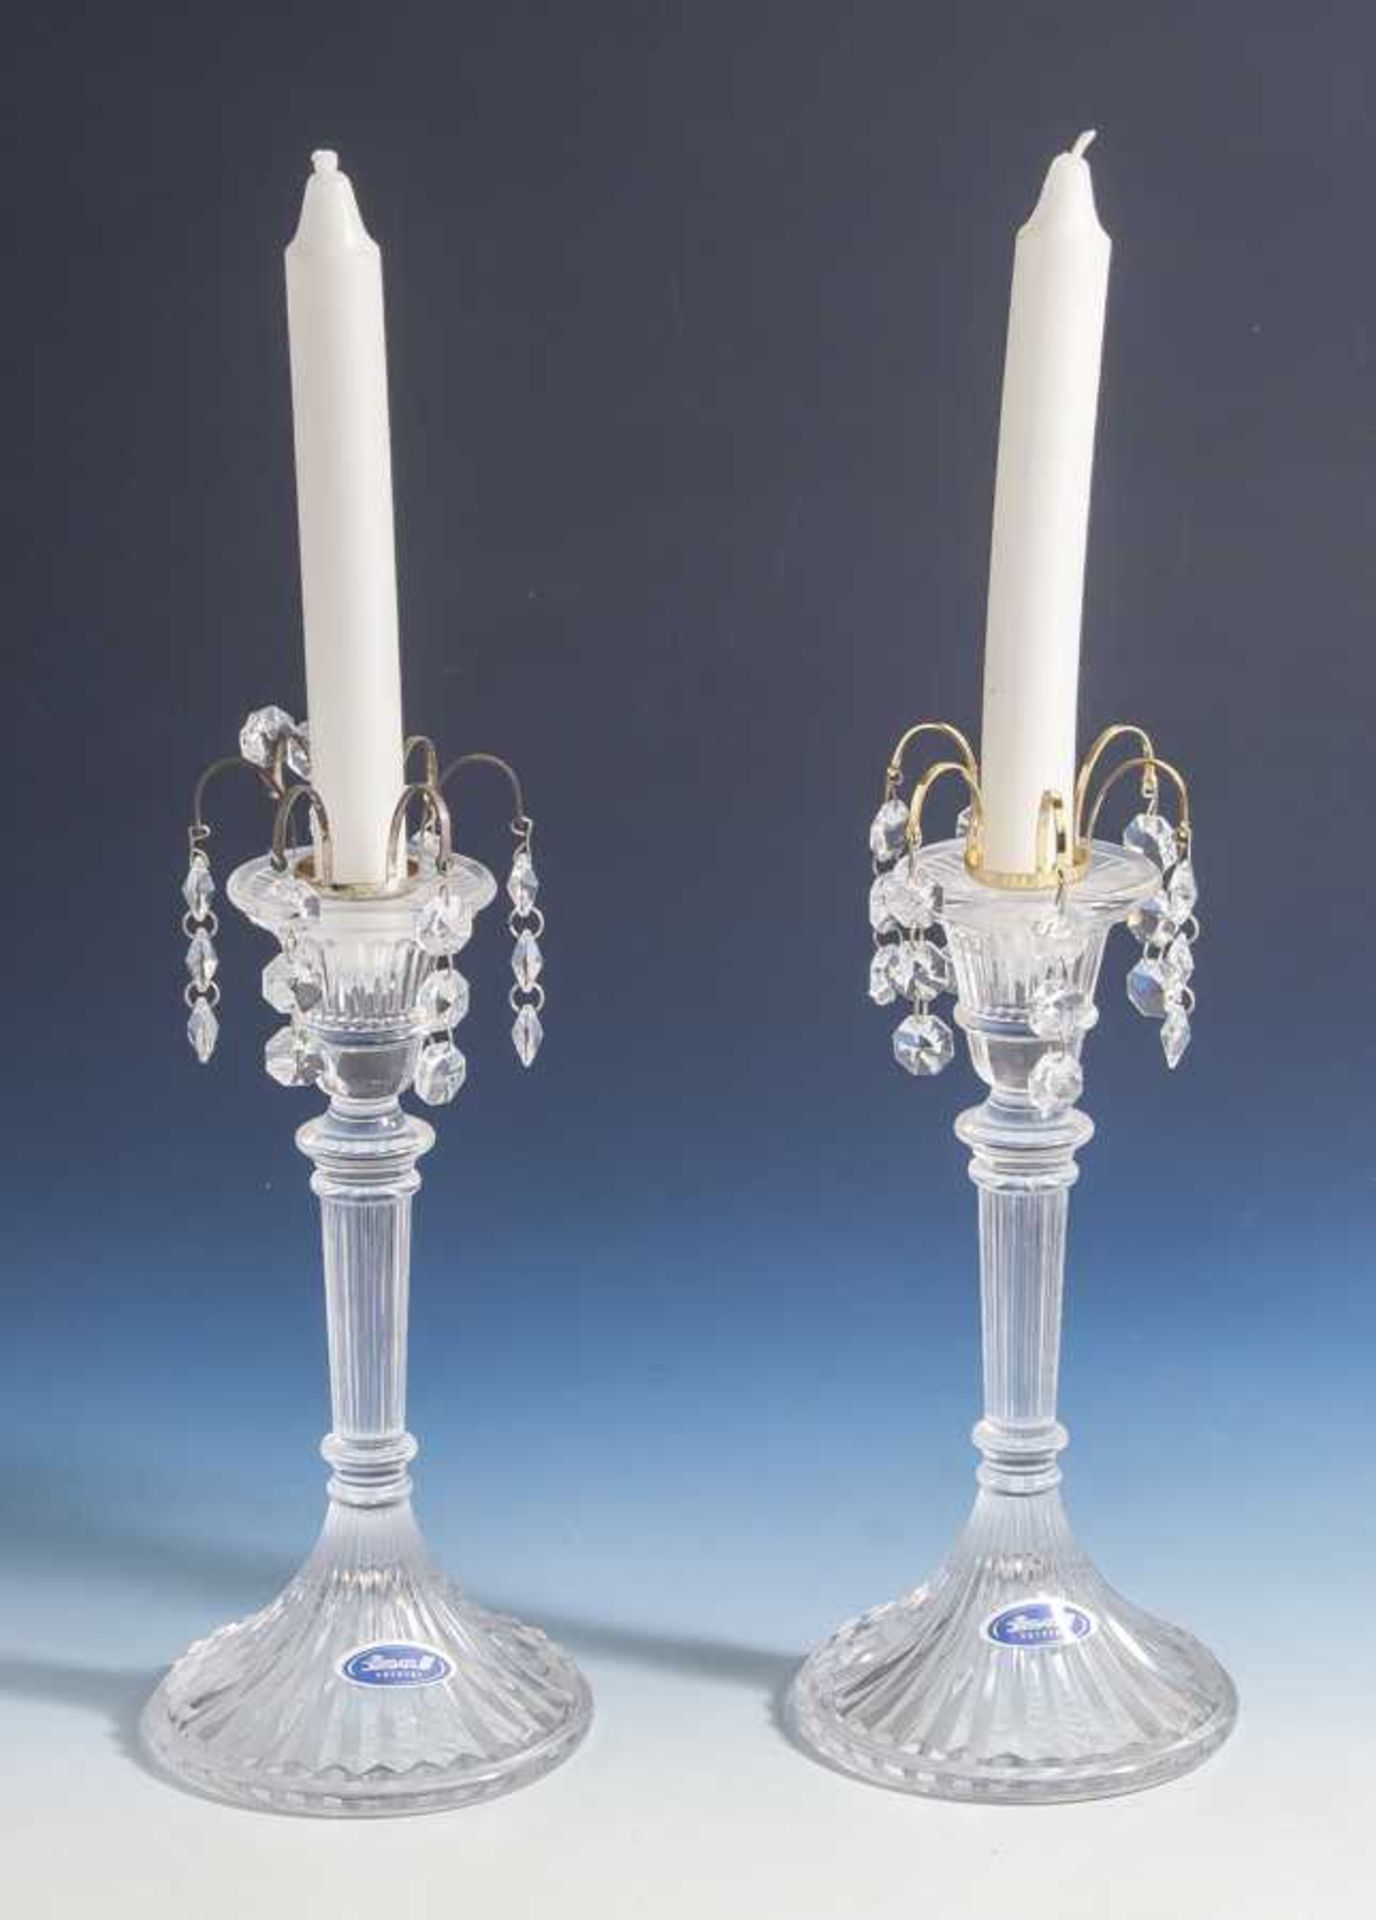 Paar Kerzenhalter, Joska Crystal, 20. Jahrhundert, farbloses Pressglass, H. ca. 21,5 cm.